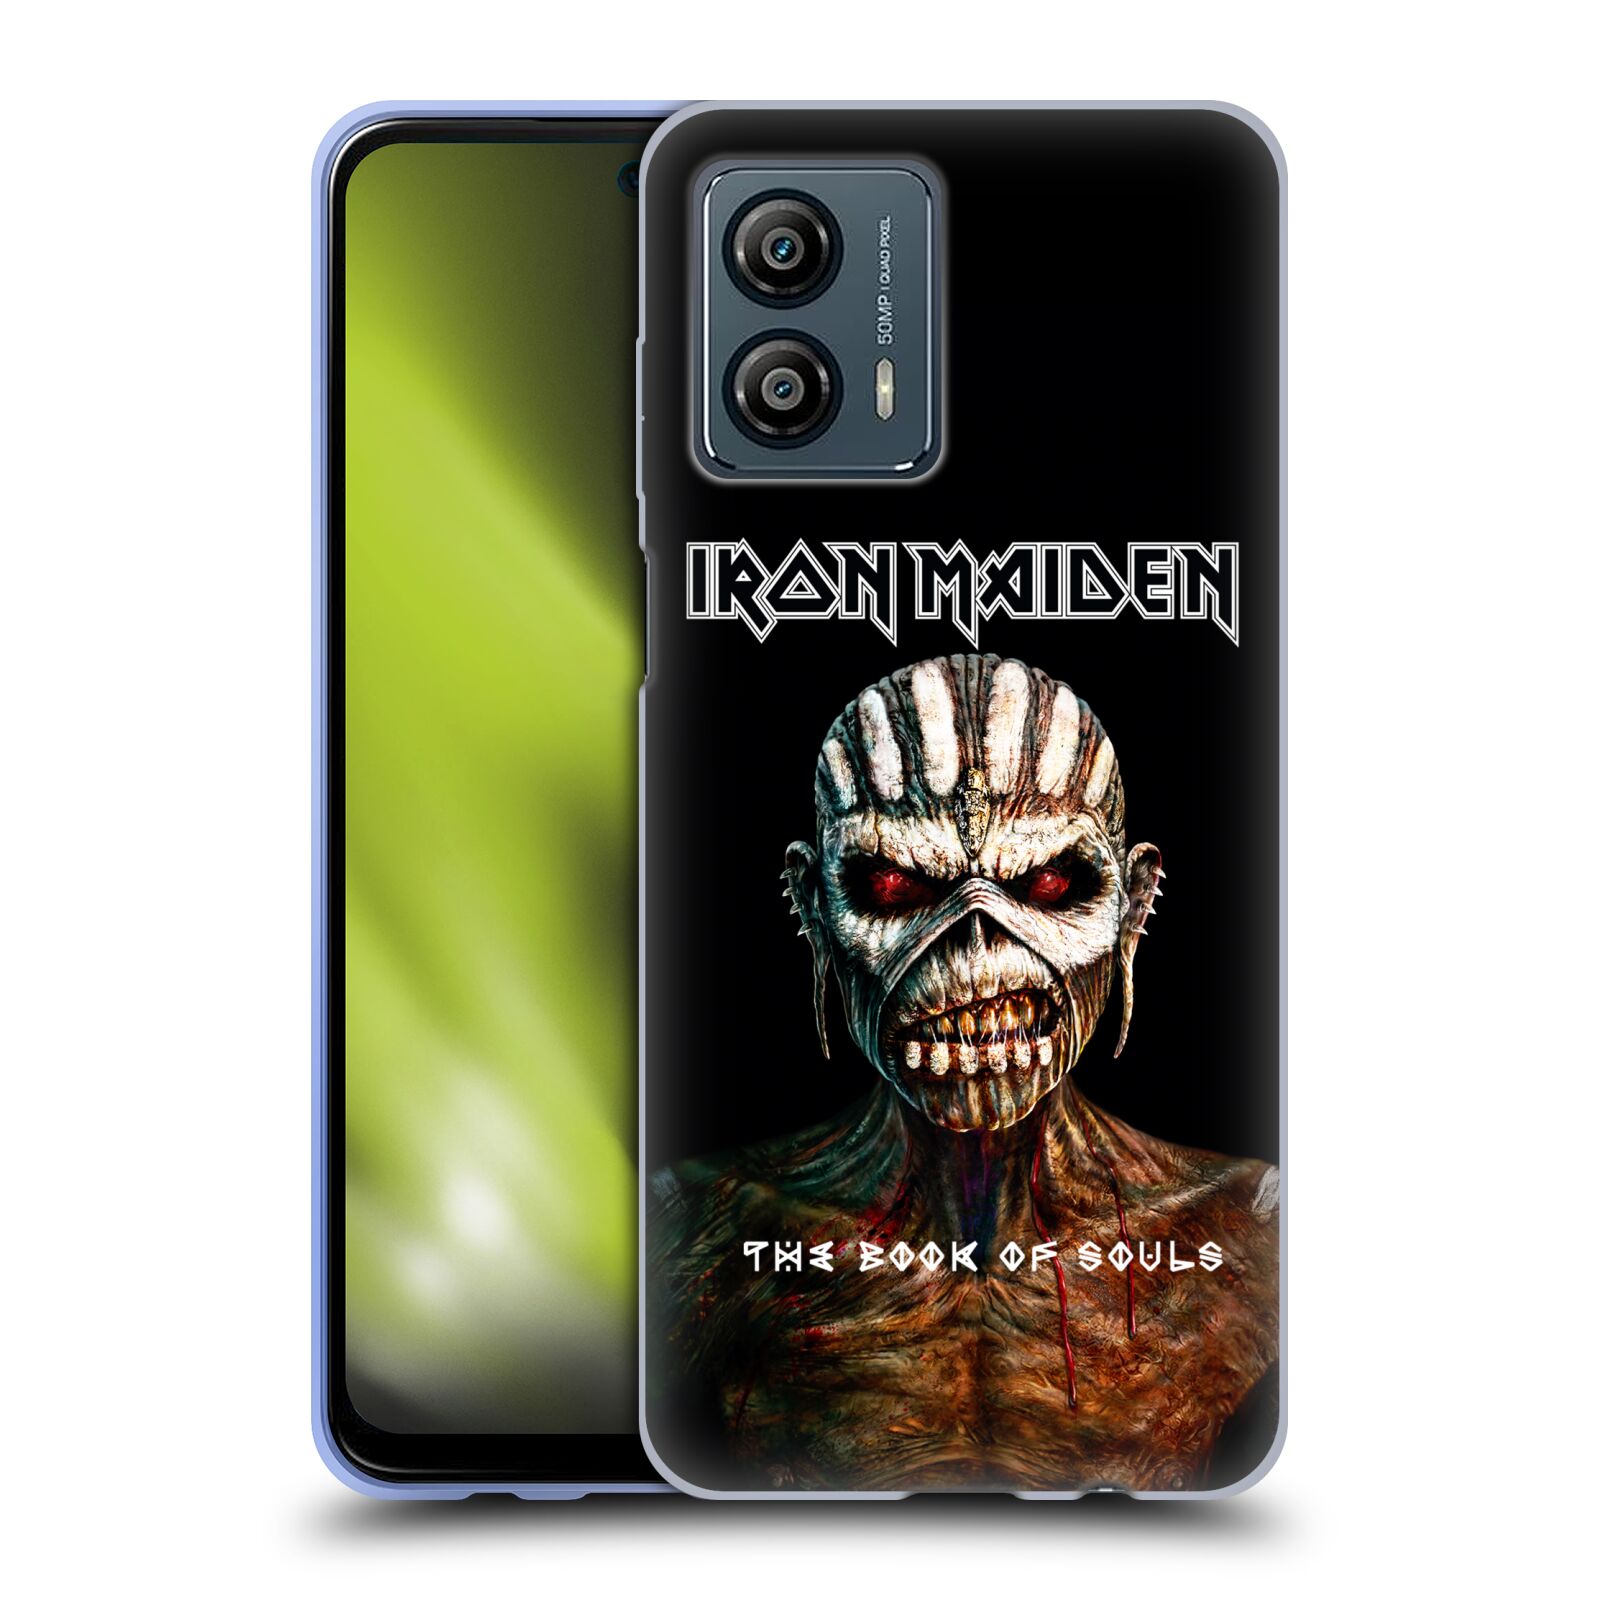 Silikonové pouzdro na mobil Motorola Moto G53 5G - Head Case - Iron Maiden - The Book Of Souls (Silikonový kryt, obal, pouzdro na mobilní telefon Motorola Moto G53 5G s motivem Iron Maiden - The Book Of Souls)